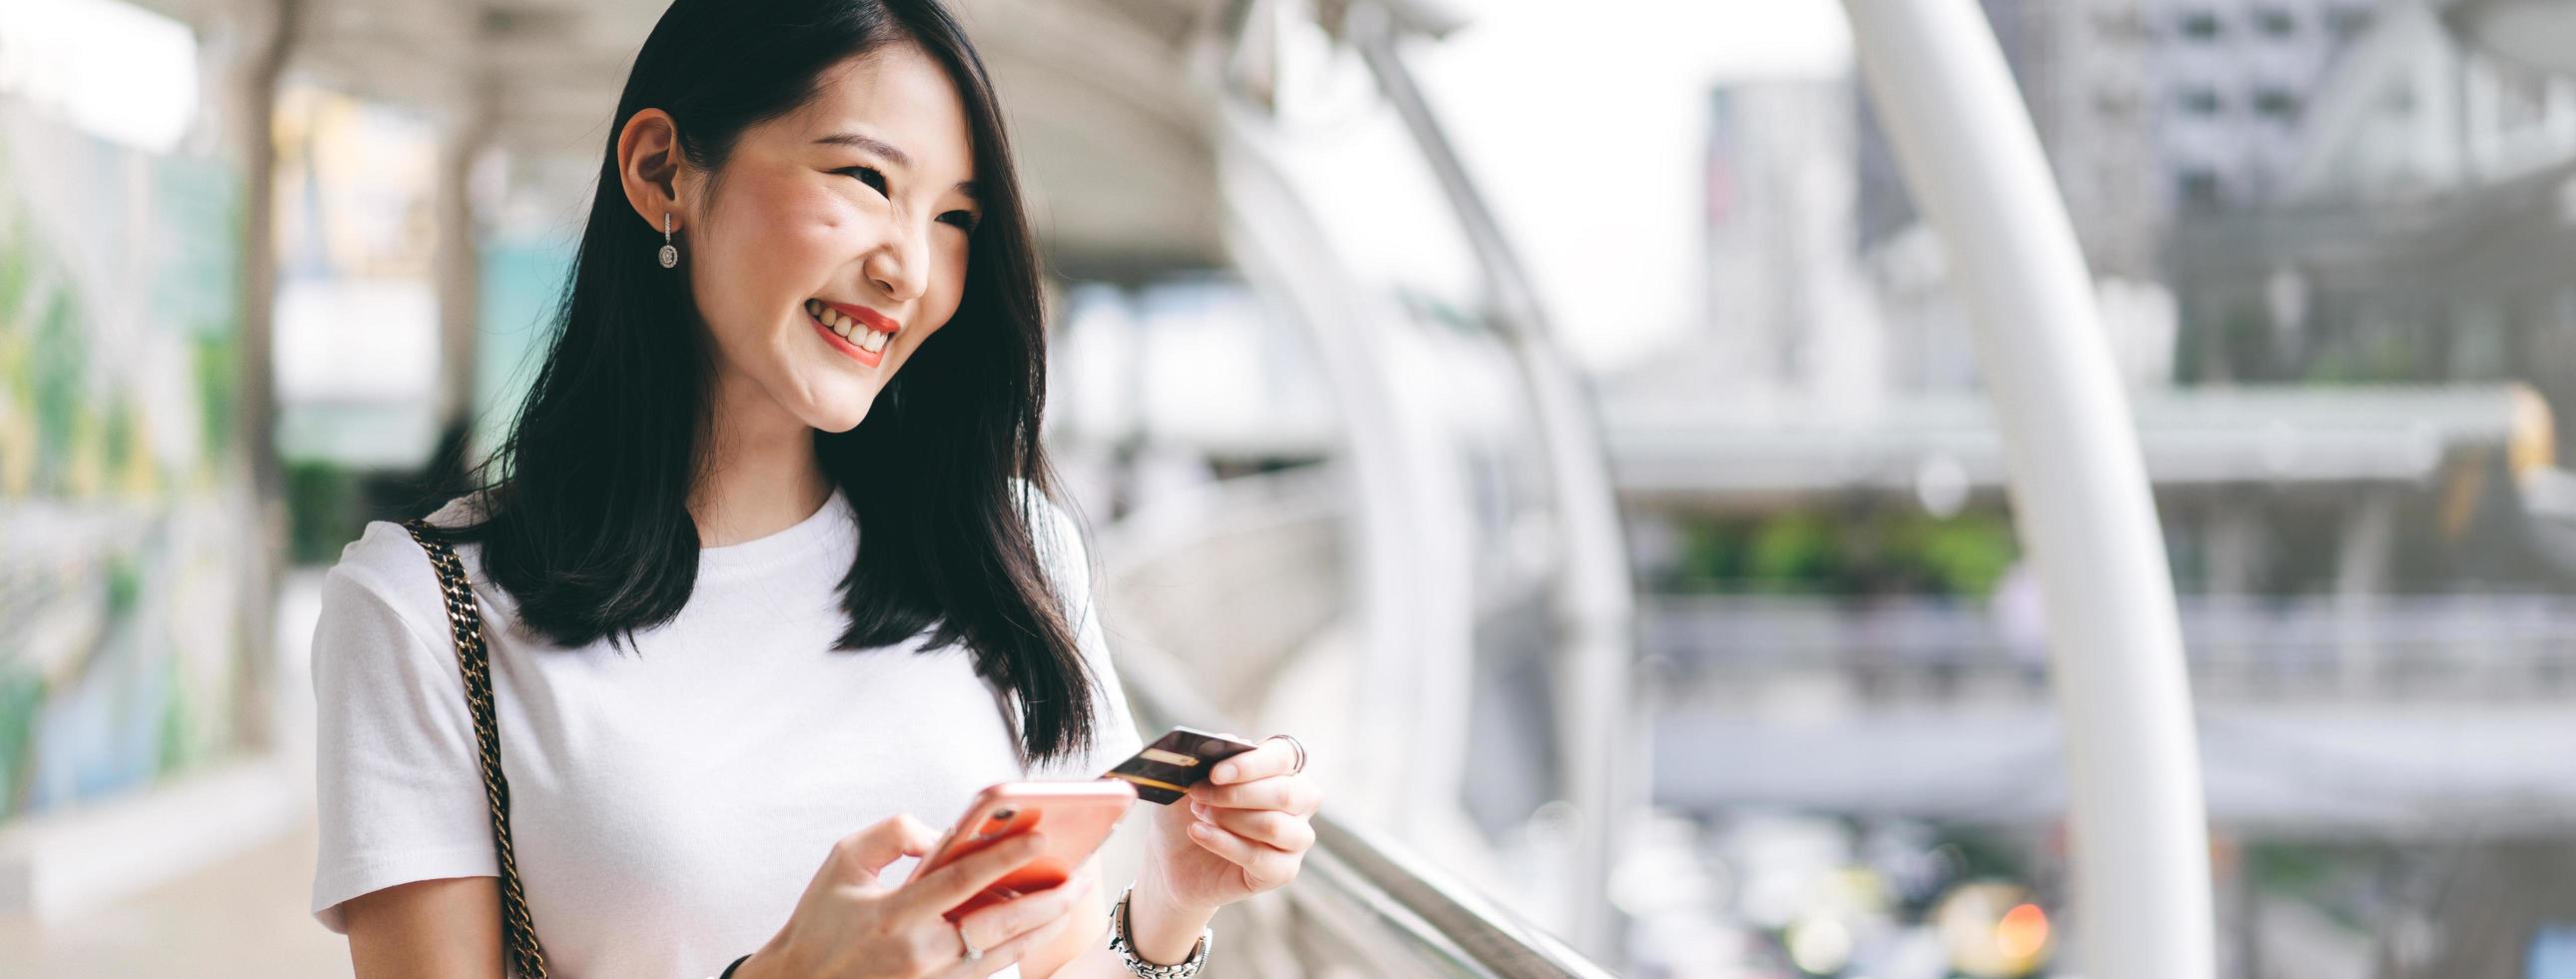 jeune femme asiatique d'affaires adulte consommatrice utilisant une carte de crédit et un smartphone pour faire des achats en ligne. photo